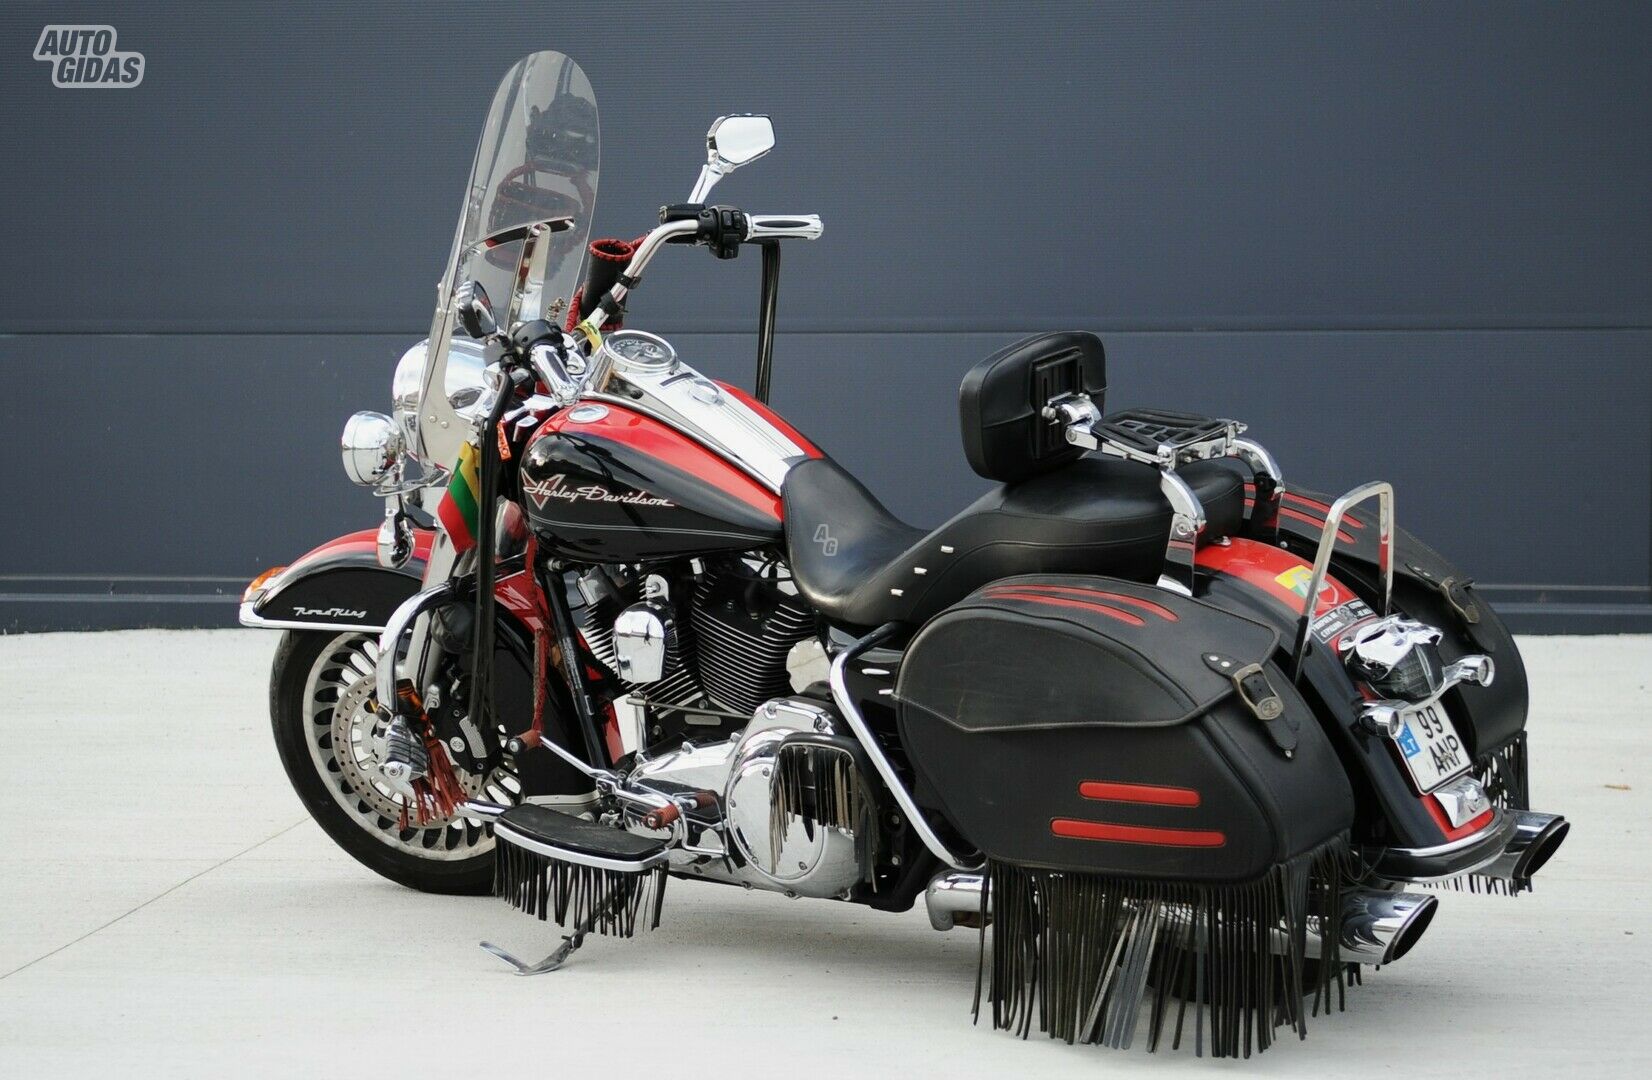 Harley-Davidson Road King 2012 y Touring / Sport Touring motorcycle